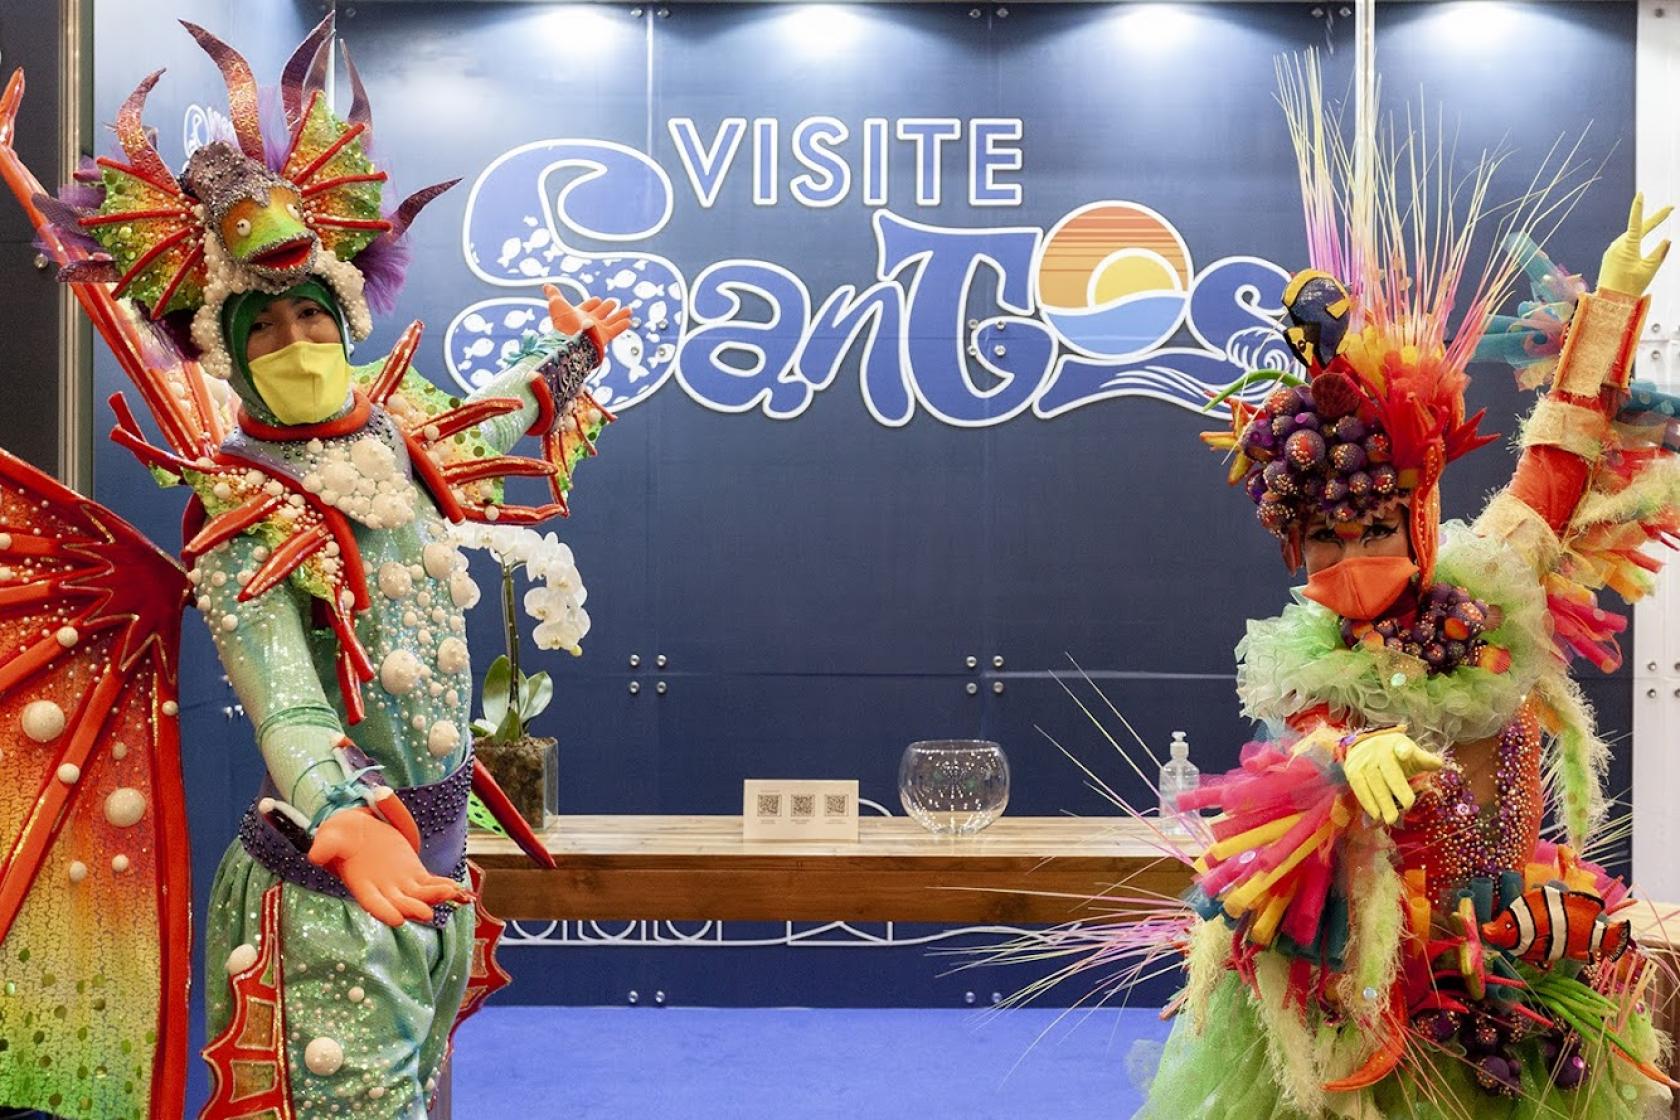 Recepcionistas de estande de Santos vestidos com motivos marinhos coloridos e usando máscaras. #paratodosverem